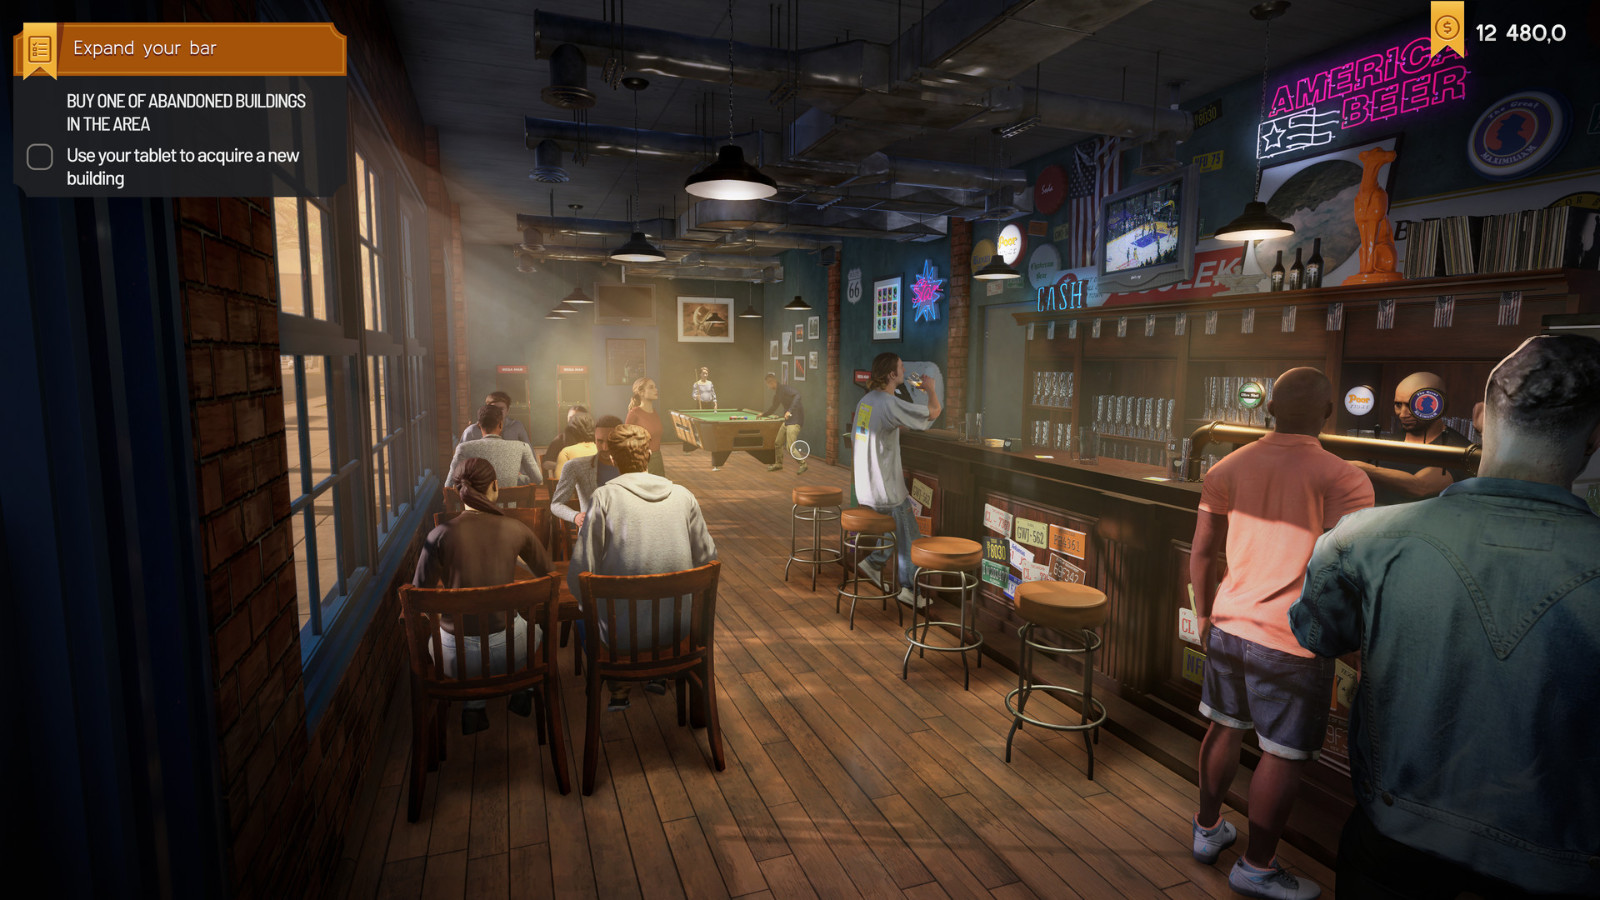 模拟经营游戏《酒馆模拟器》试玩Demo上线 年内发售 二次世界 第9张